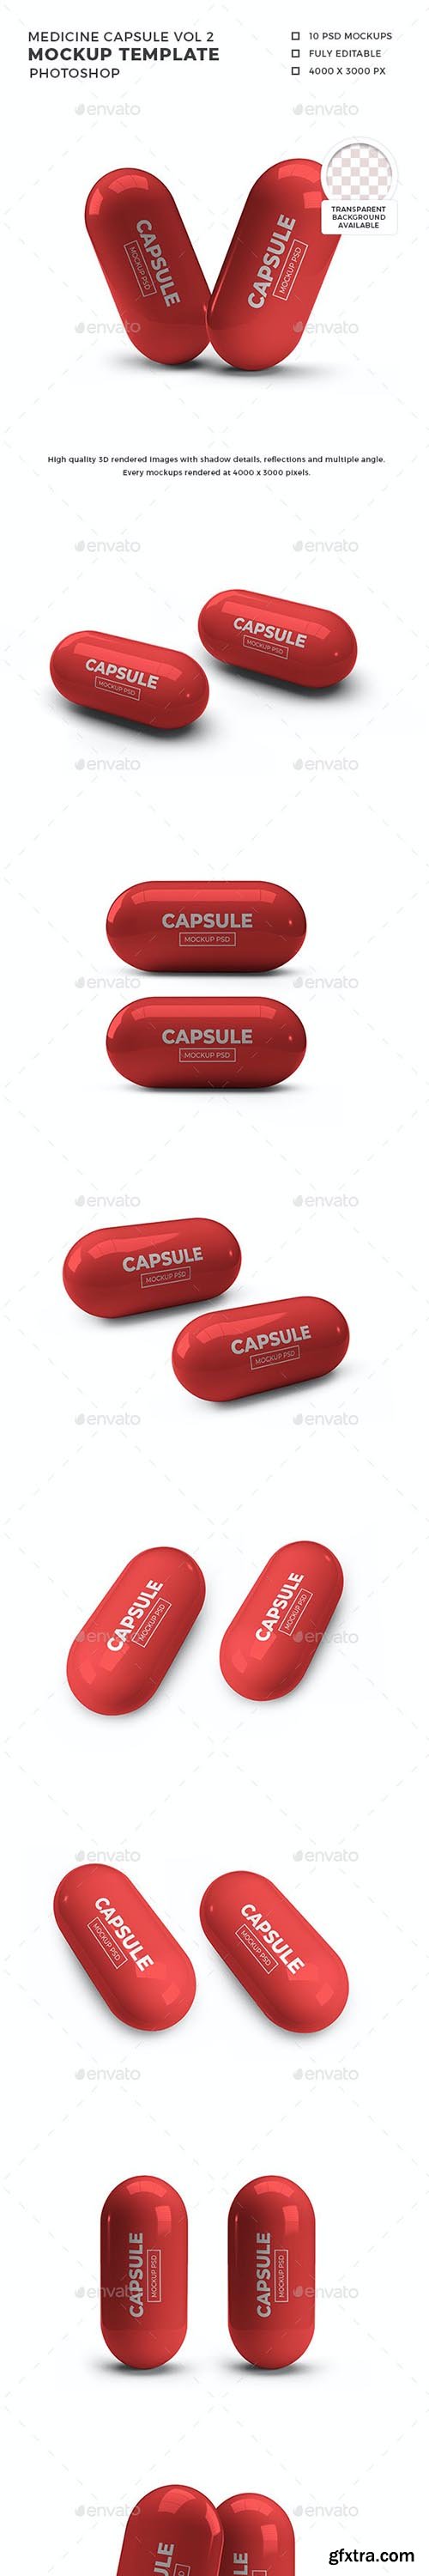 GraphicRiver - Medicine Capsule Mockup Template Vol 2 32457276